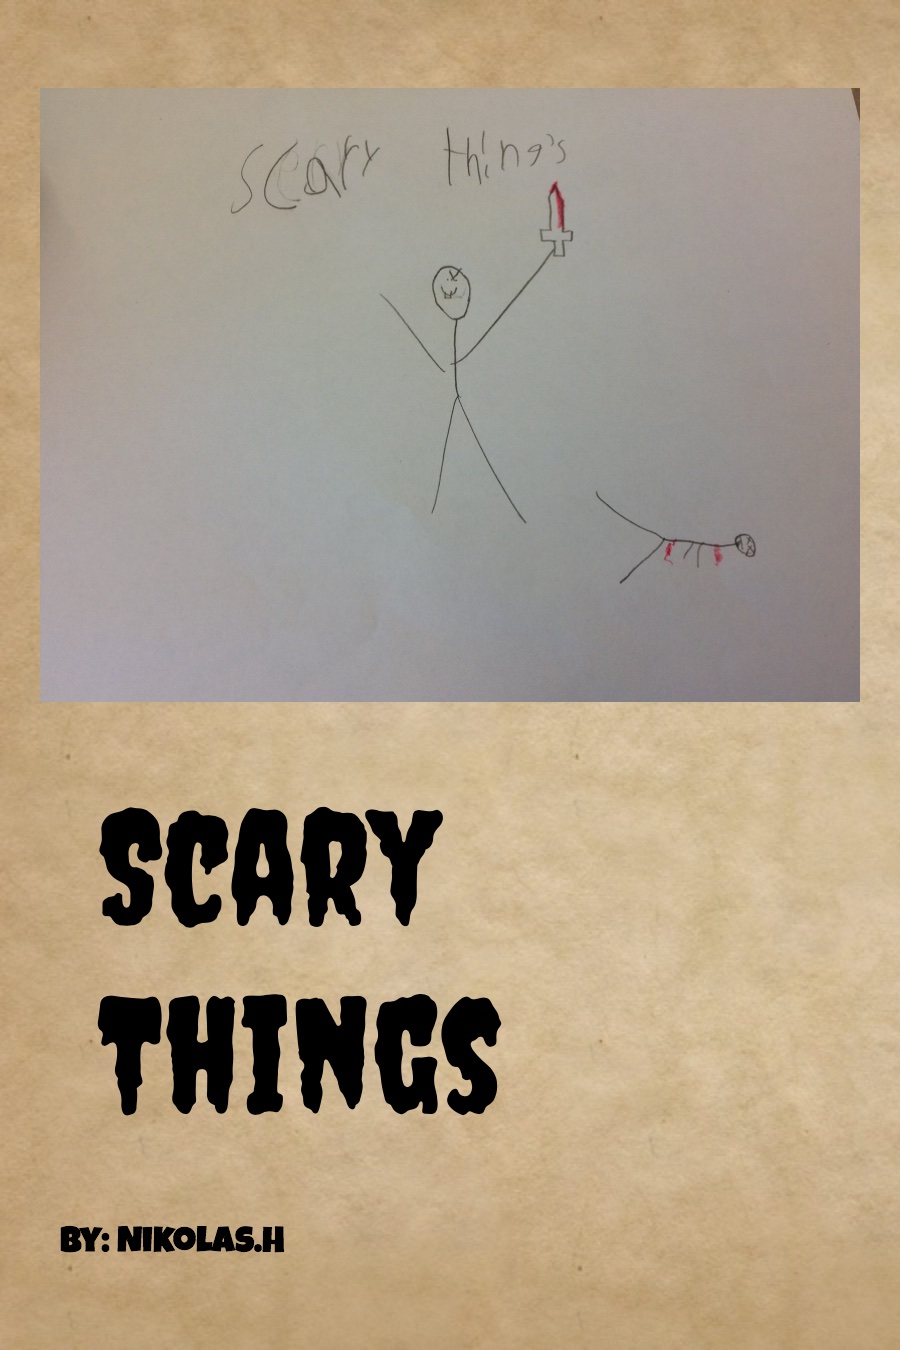 Scary things by Nikolas H